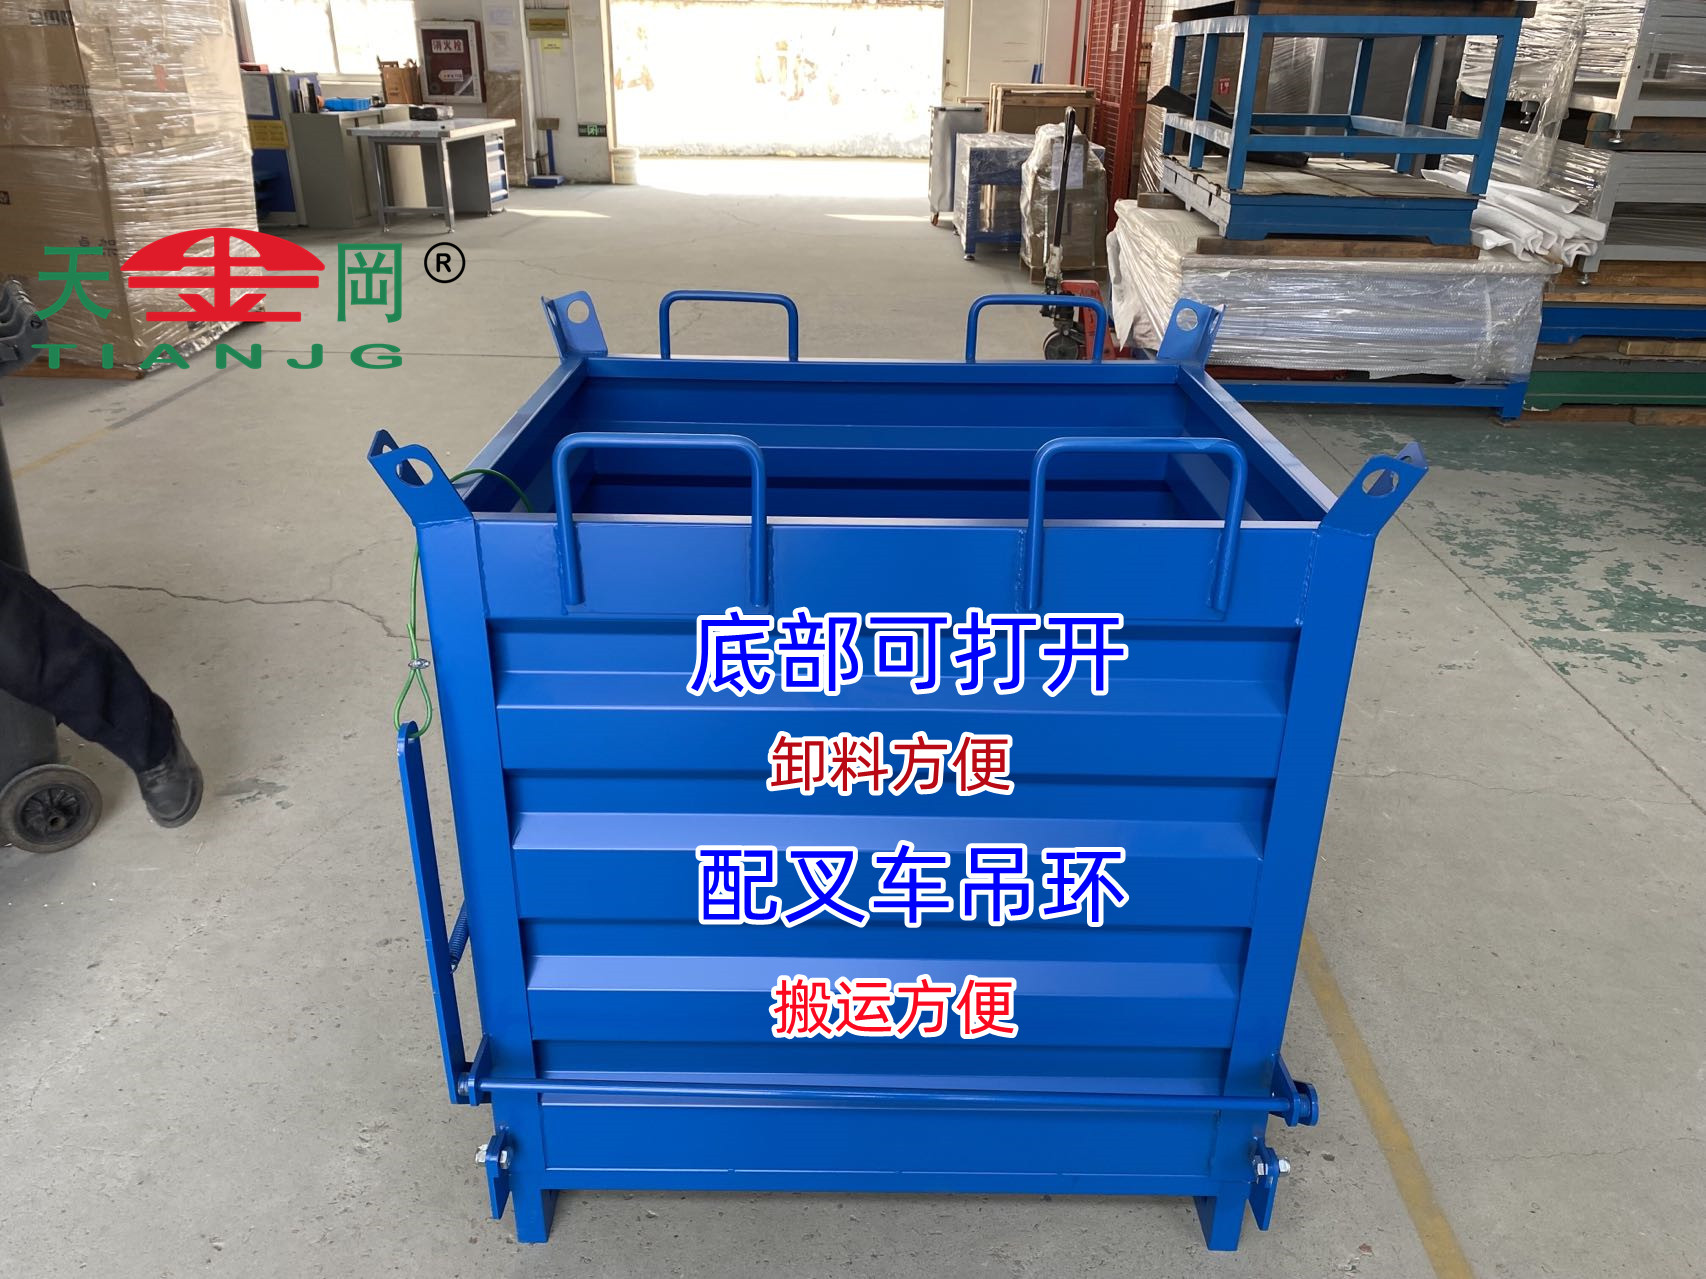 自卸式废料箱代替人工高效处理产生的废料【天金冈】